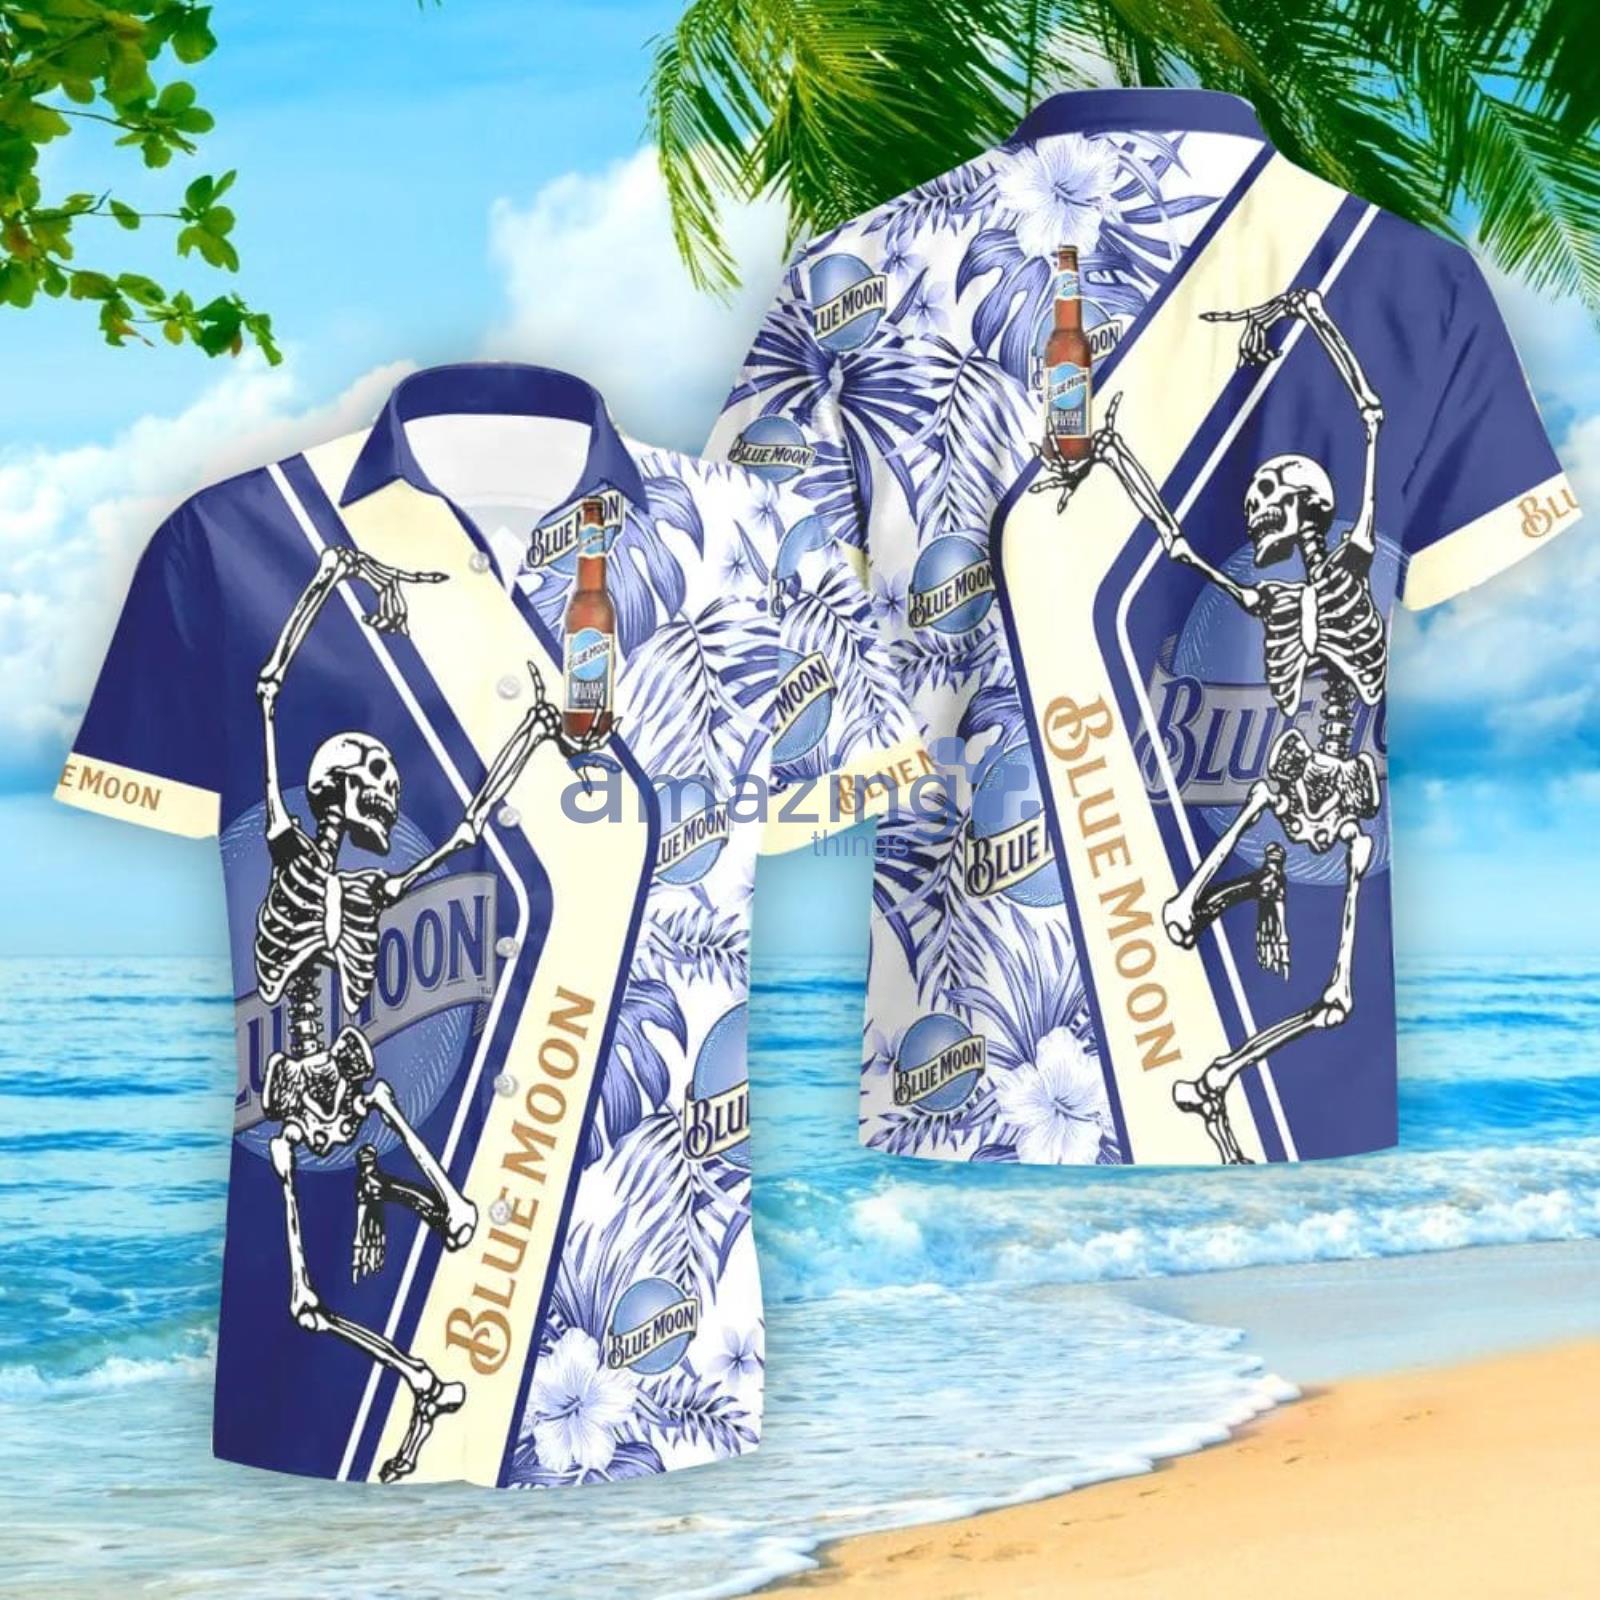 BLUE MOON Beer Hawaiian Shirt for Men